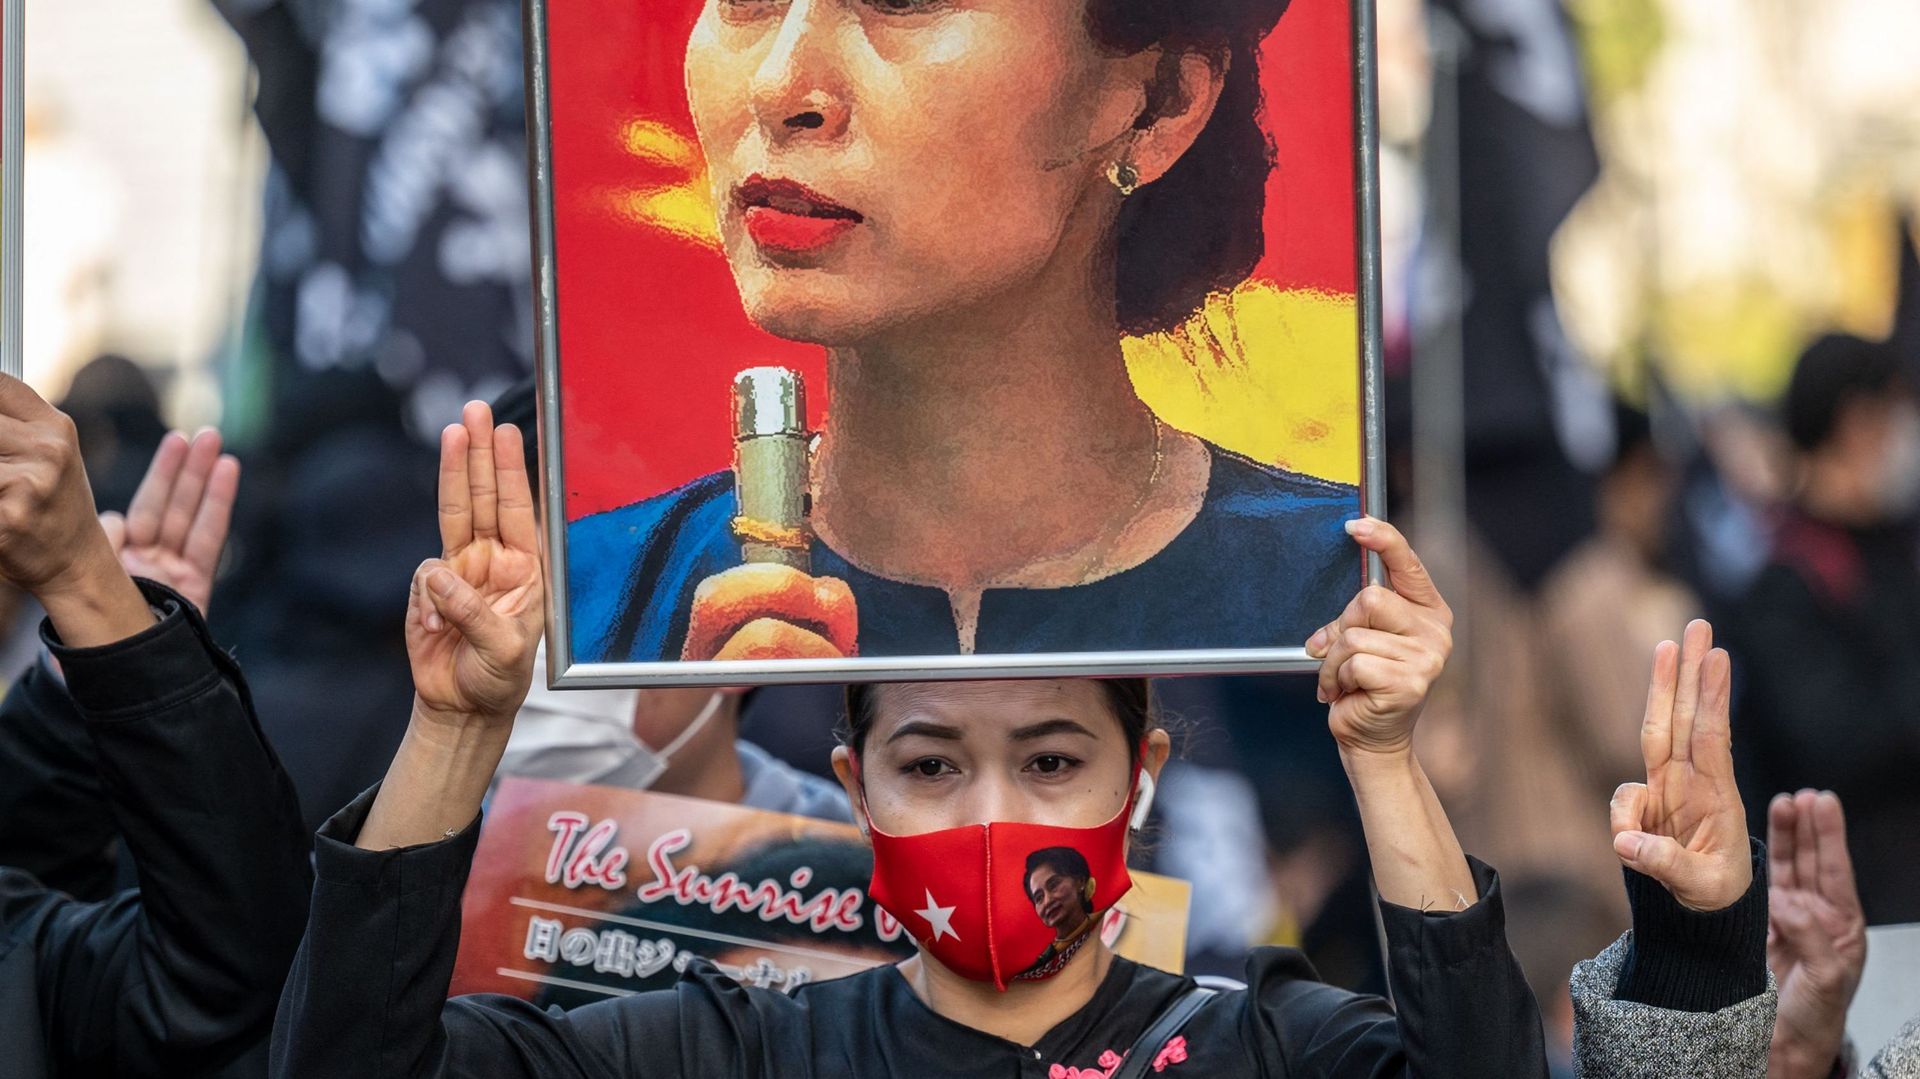 L’ex-dirigeante Aung San Suu Kyi, déjà condamnée à six ans de détention par la junte en Birmanie, a de nouveau été inculpée pour corruption, a appris l’AFP samedi de sources proches du dossier.